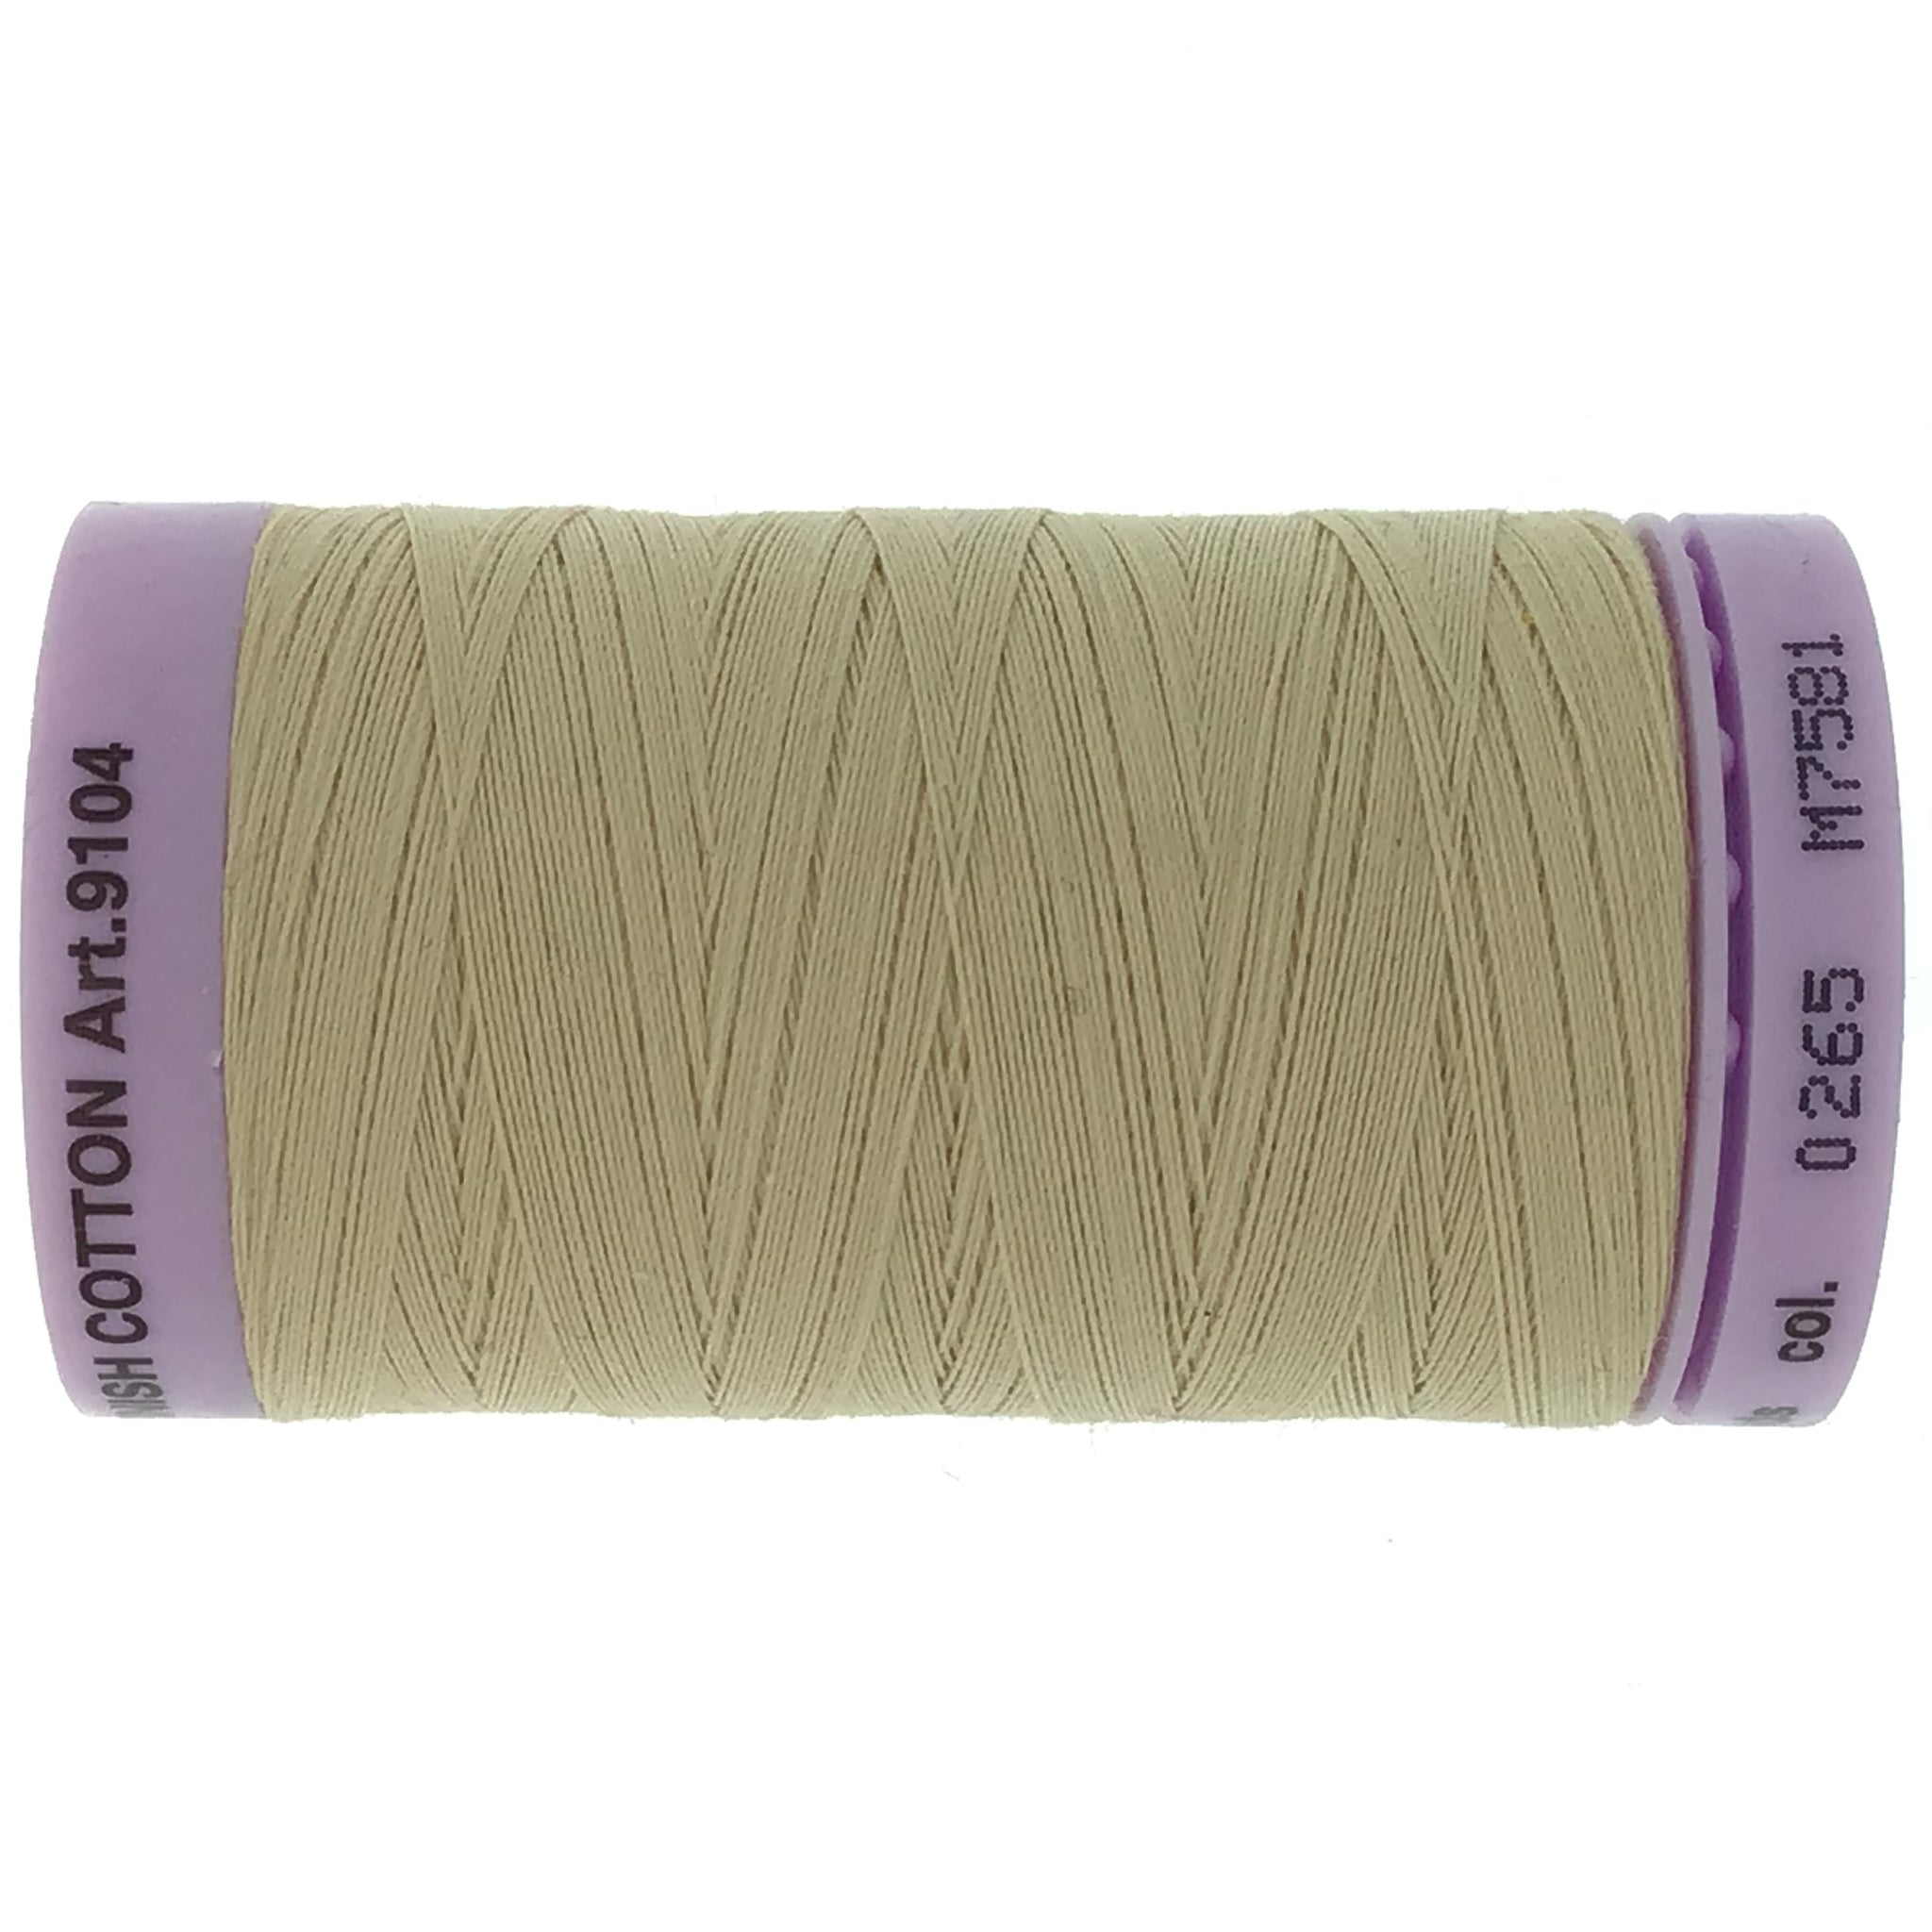 Mettler Cotton 50wt Thread - 500mt - 0265 - Beige